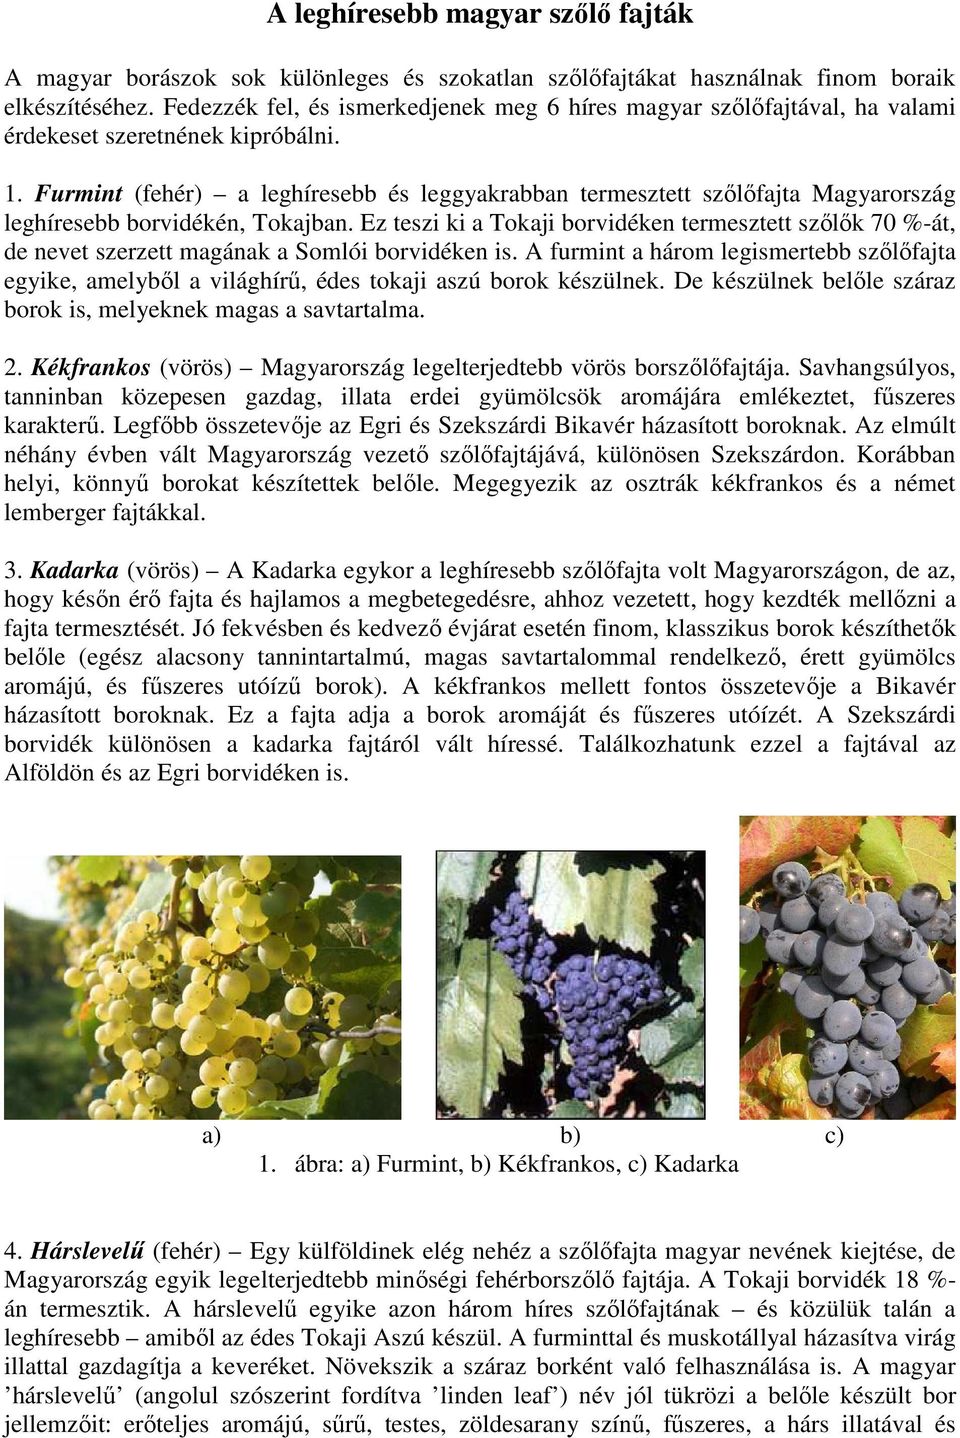 Furmint (fehér) a leghíresebb és leggyakrabban termesztett szőlőfajta Magyarország leghíresebb borvidékén, Tokajban.